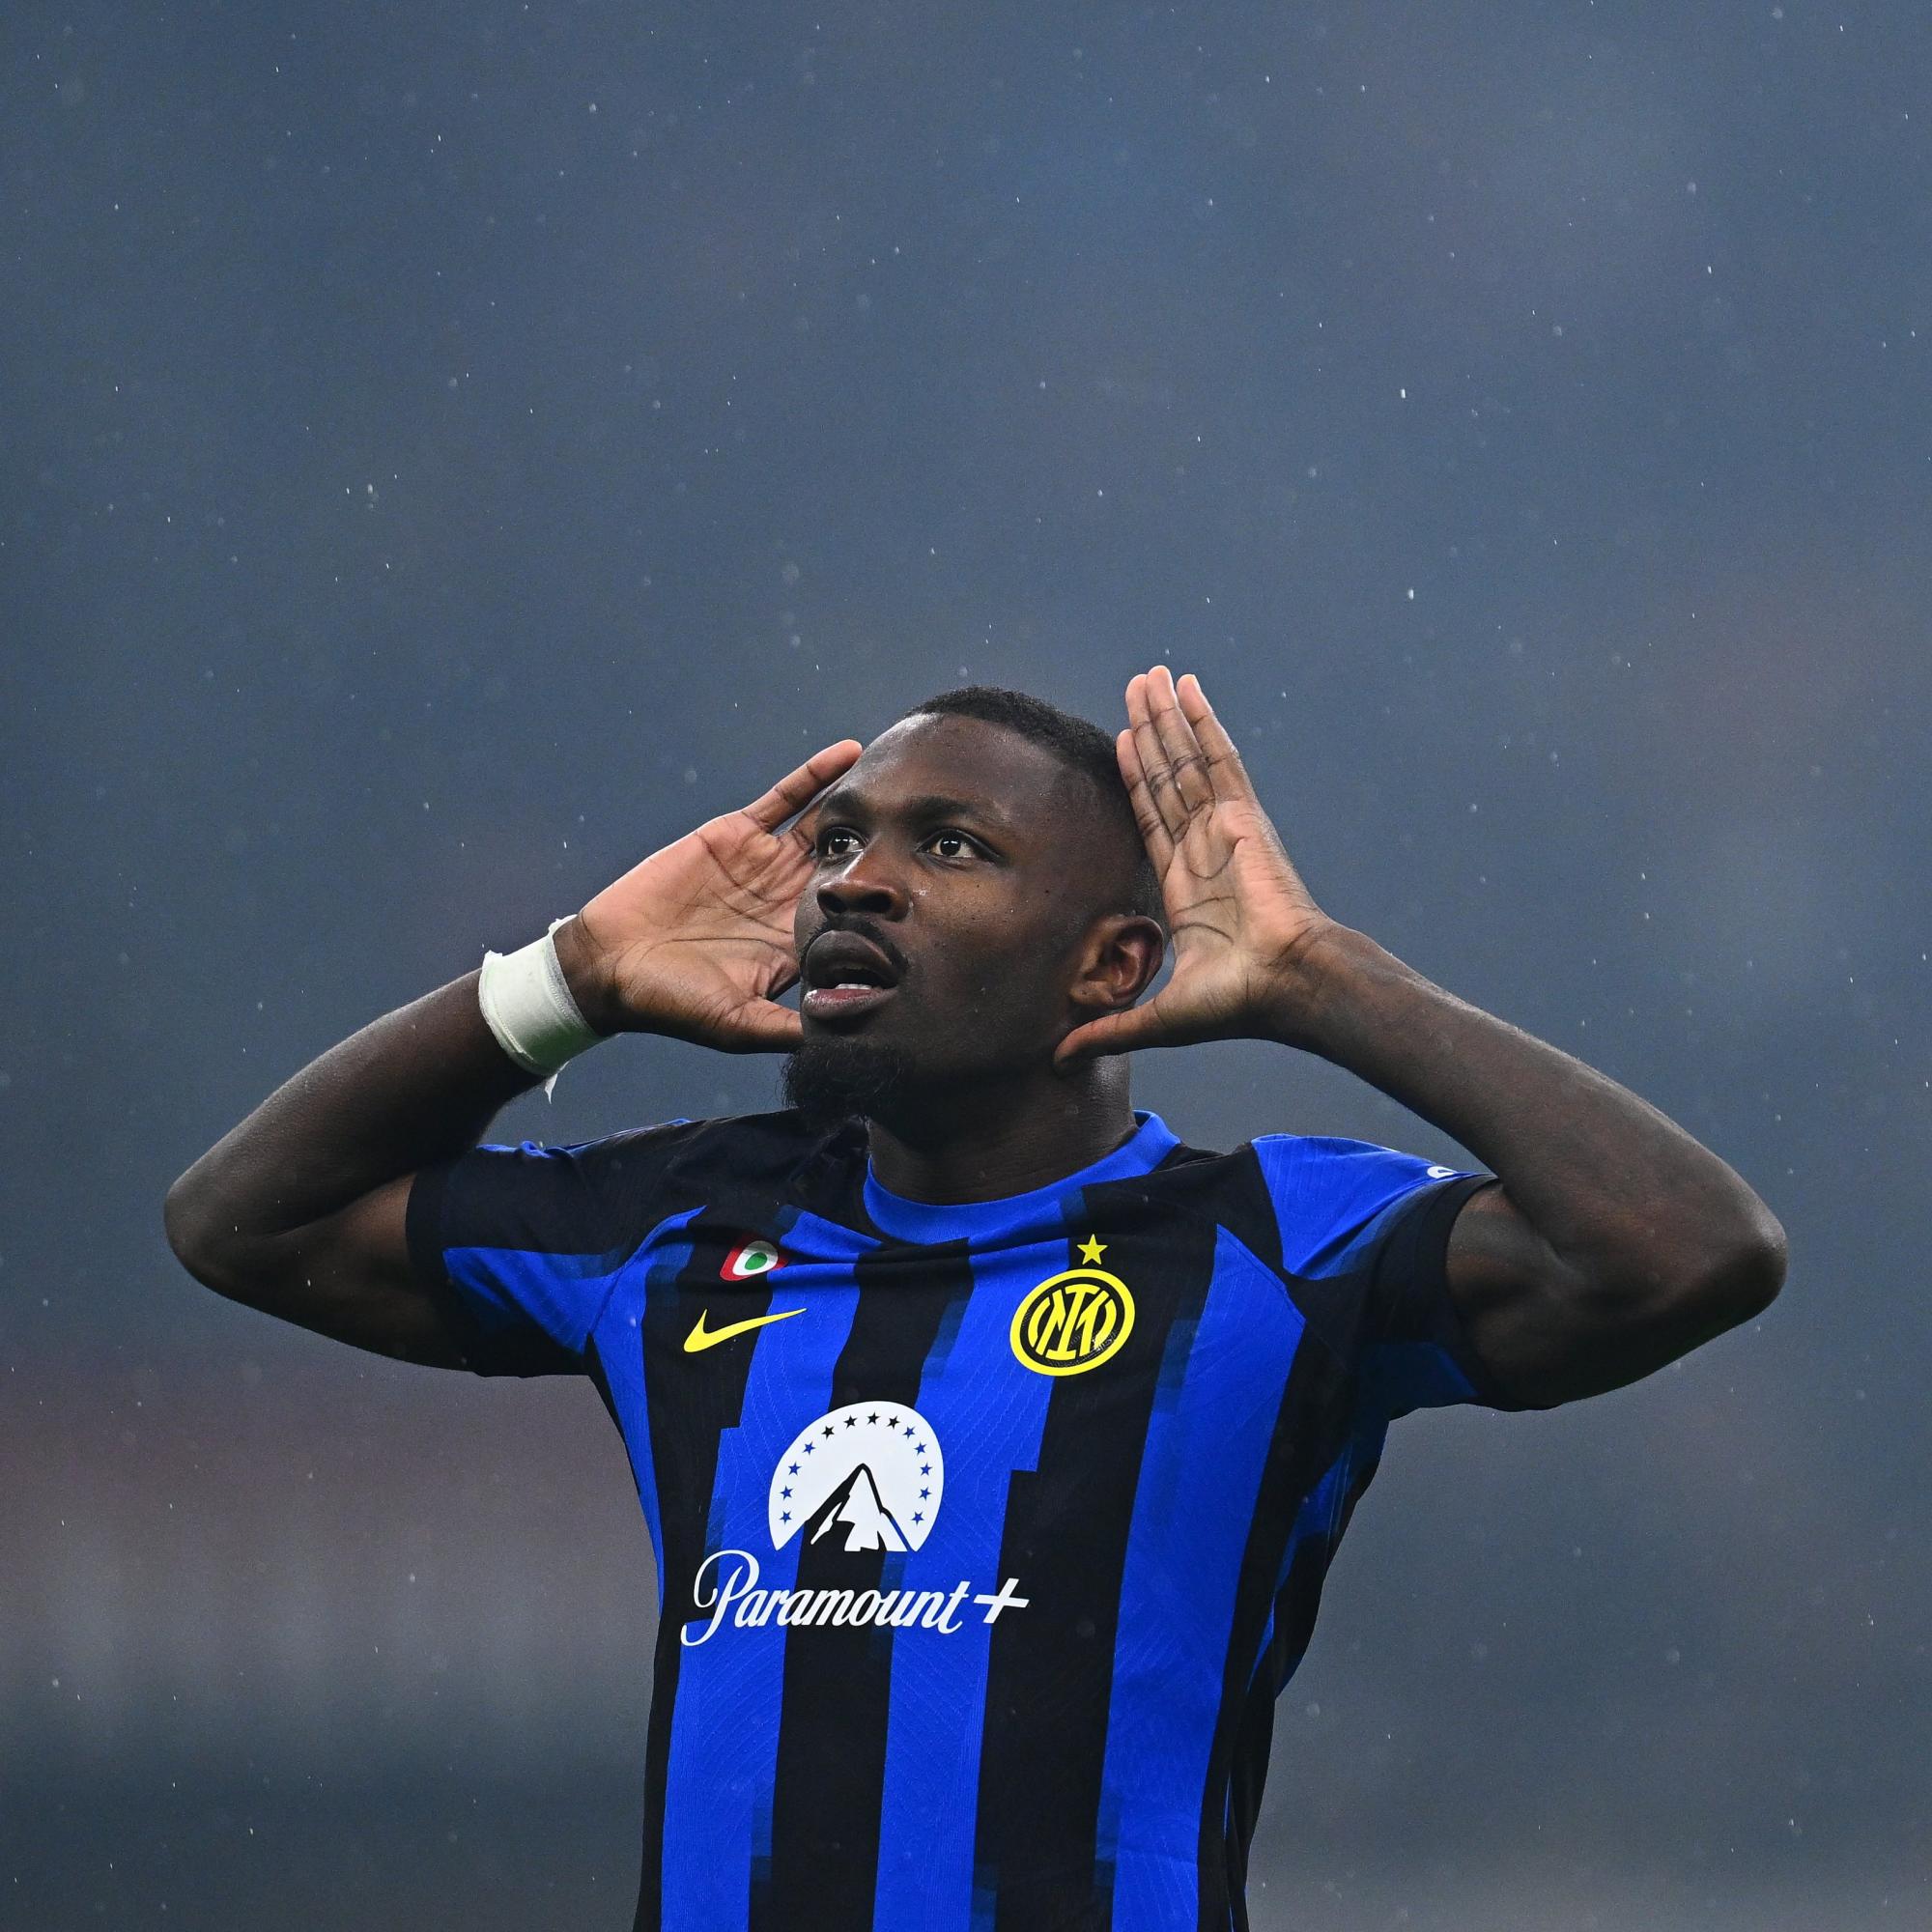 $!Inter de Milán, sin rival, conquista su vigésimo ‘Scudetto’